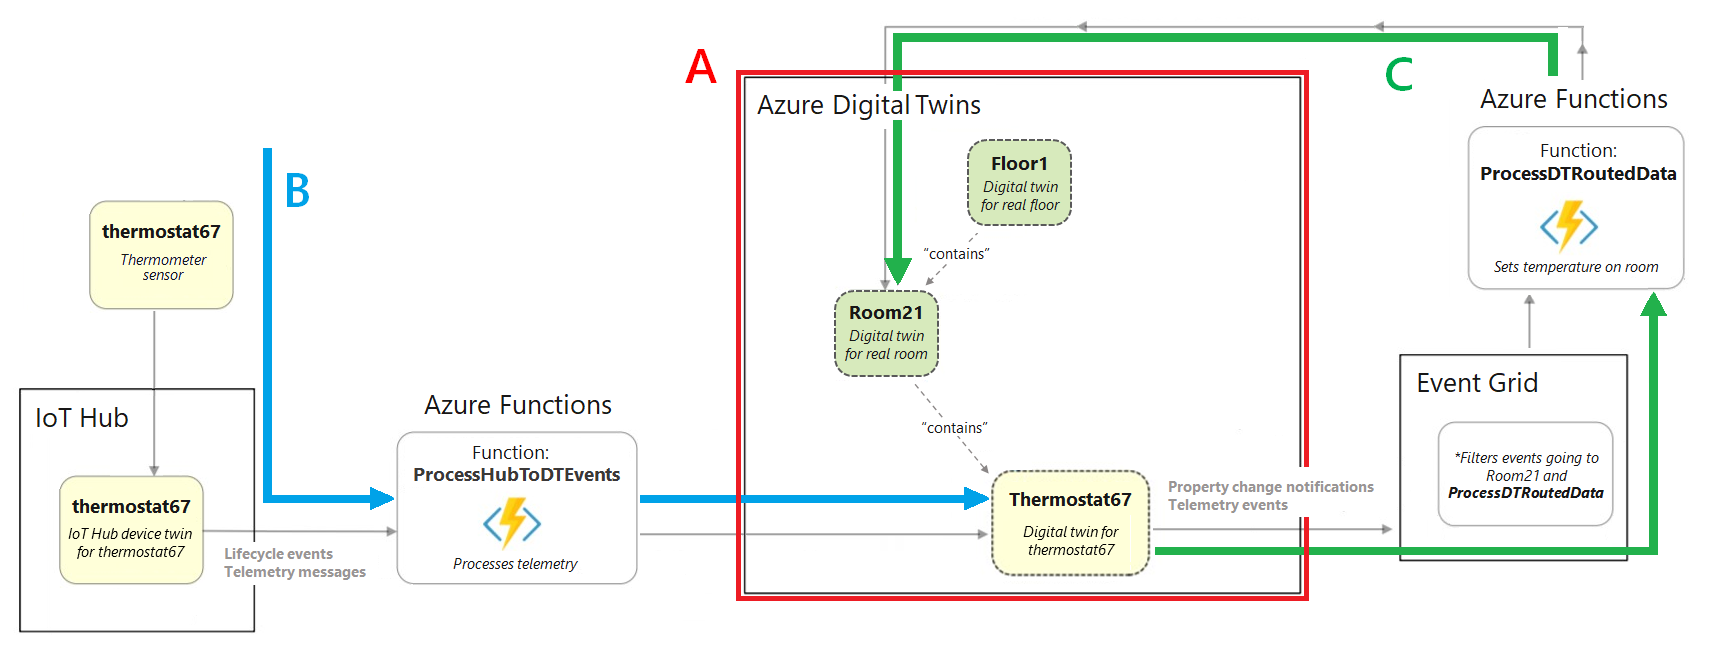 さまざまな Azure サービスを介してデバイスと Azure Digital Twins の間を流れるデータが示された完全なビルディング シナリオの図。